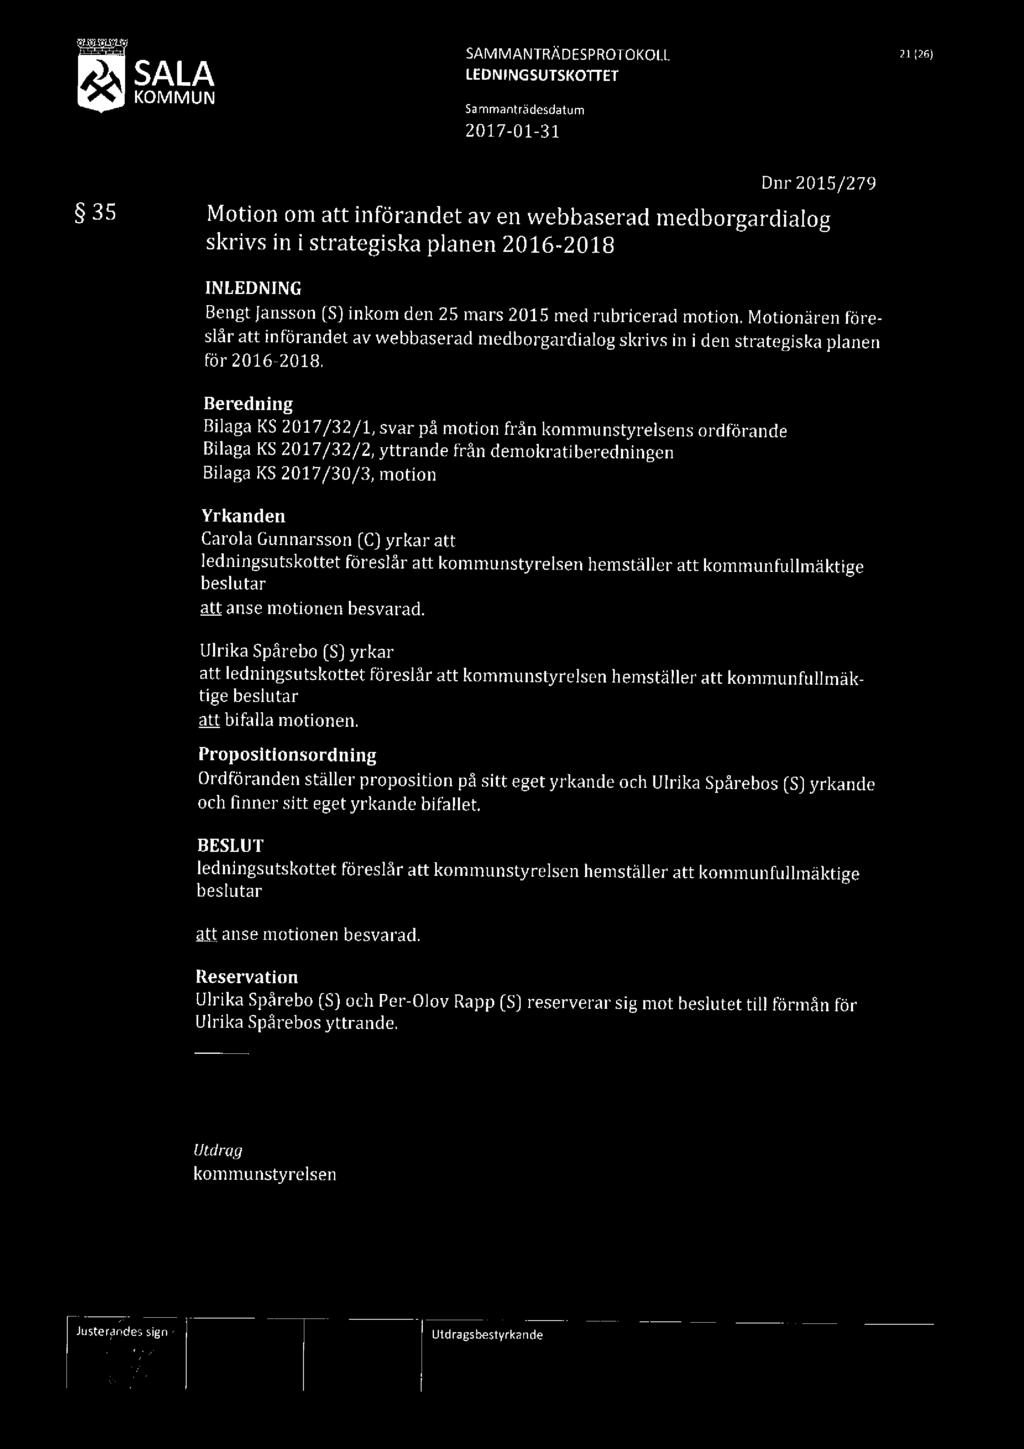 SAMMANTRÄDESPROTOKOLL 21 261 SALA 35 Motion om att införandet av en webbaserad medborgardialog skrivs in i strategiska planen 2016-2018 Dnr 2015/279 INLEDNING Bengt Jansson [S] inkom den 25 mars 2015